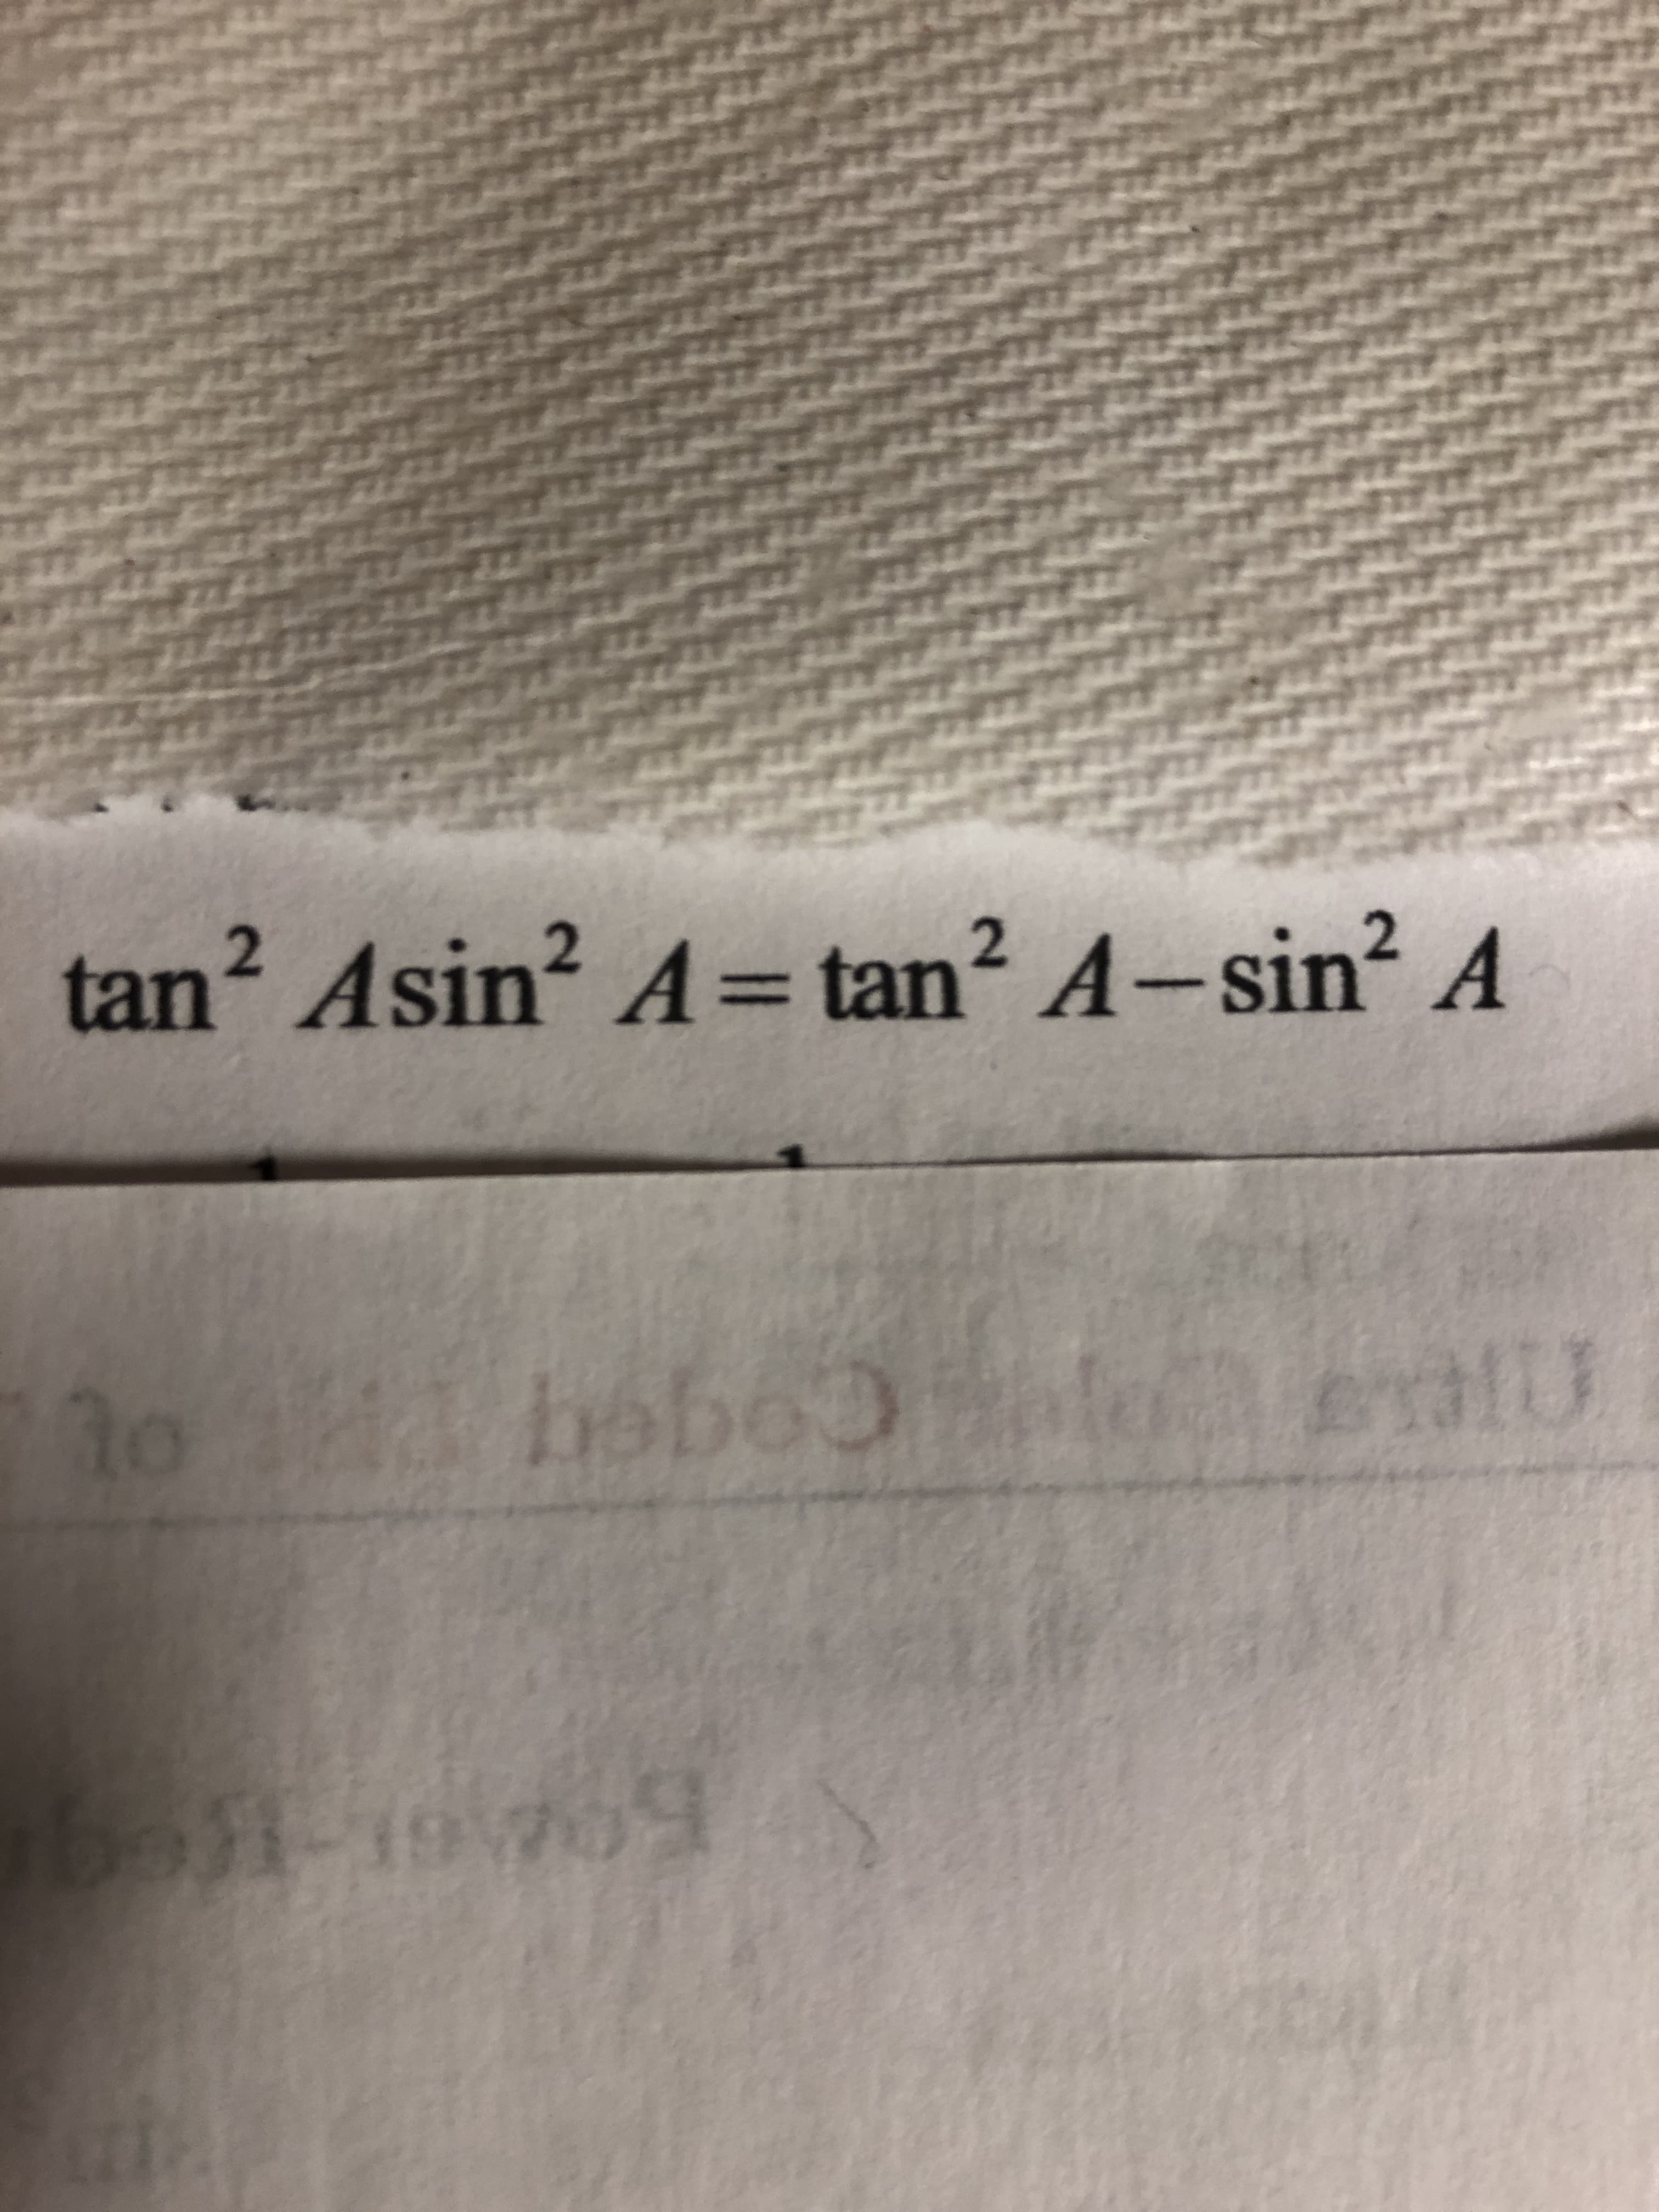 tan? Asin? A= tan? A-sin?A
%3D
